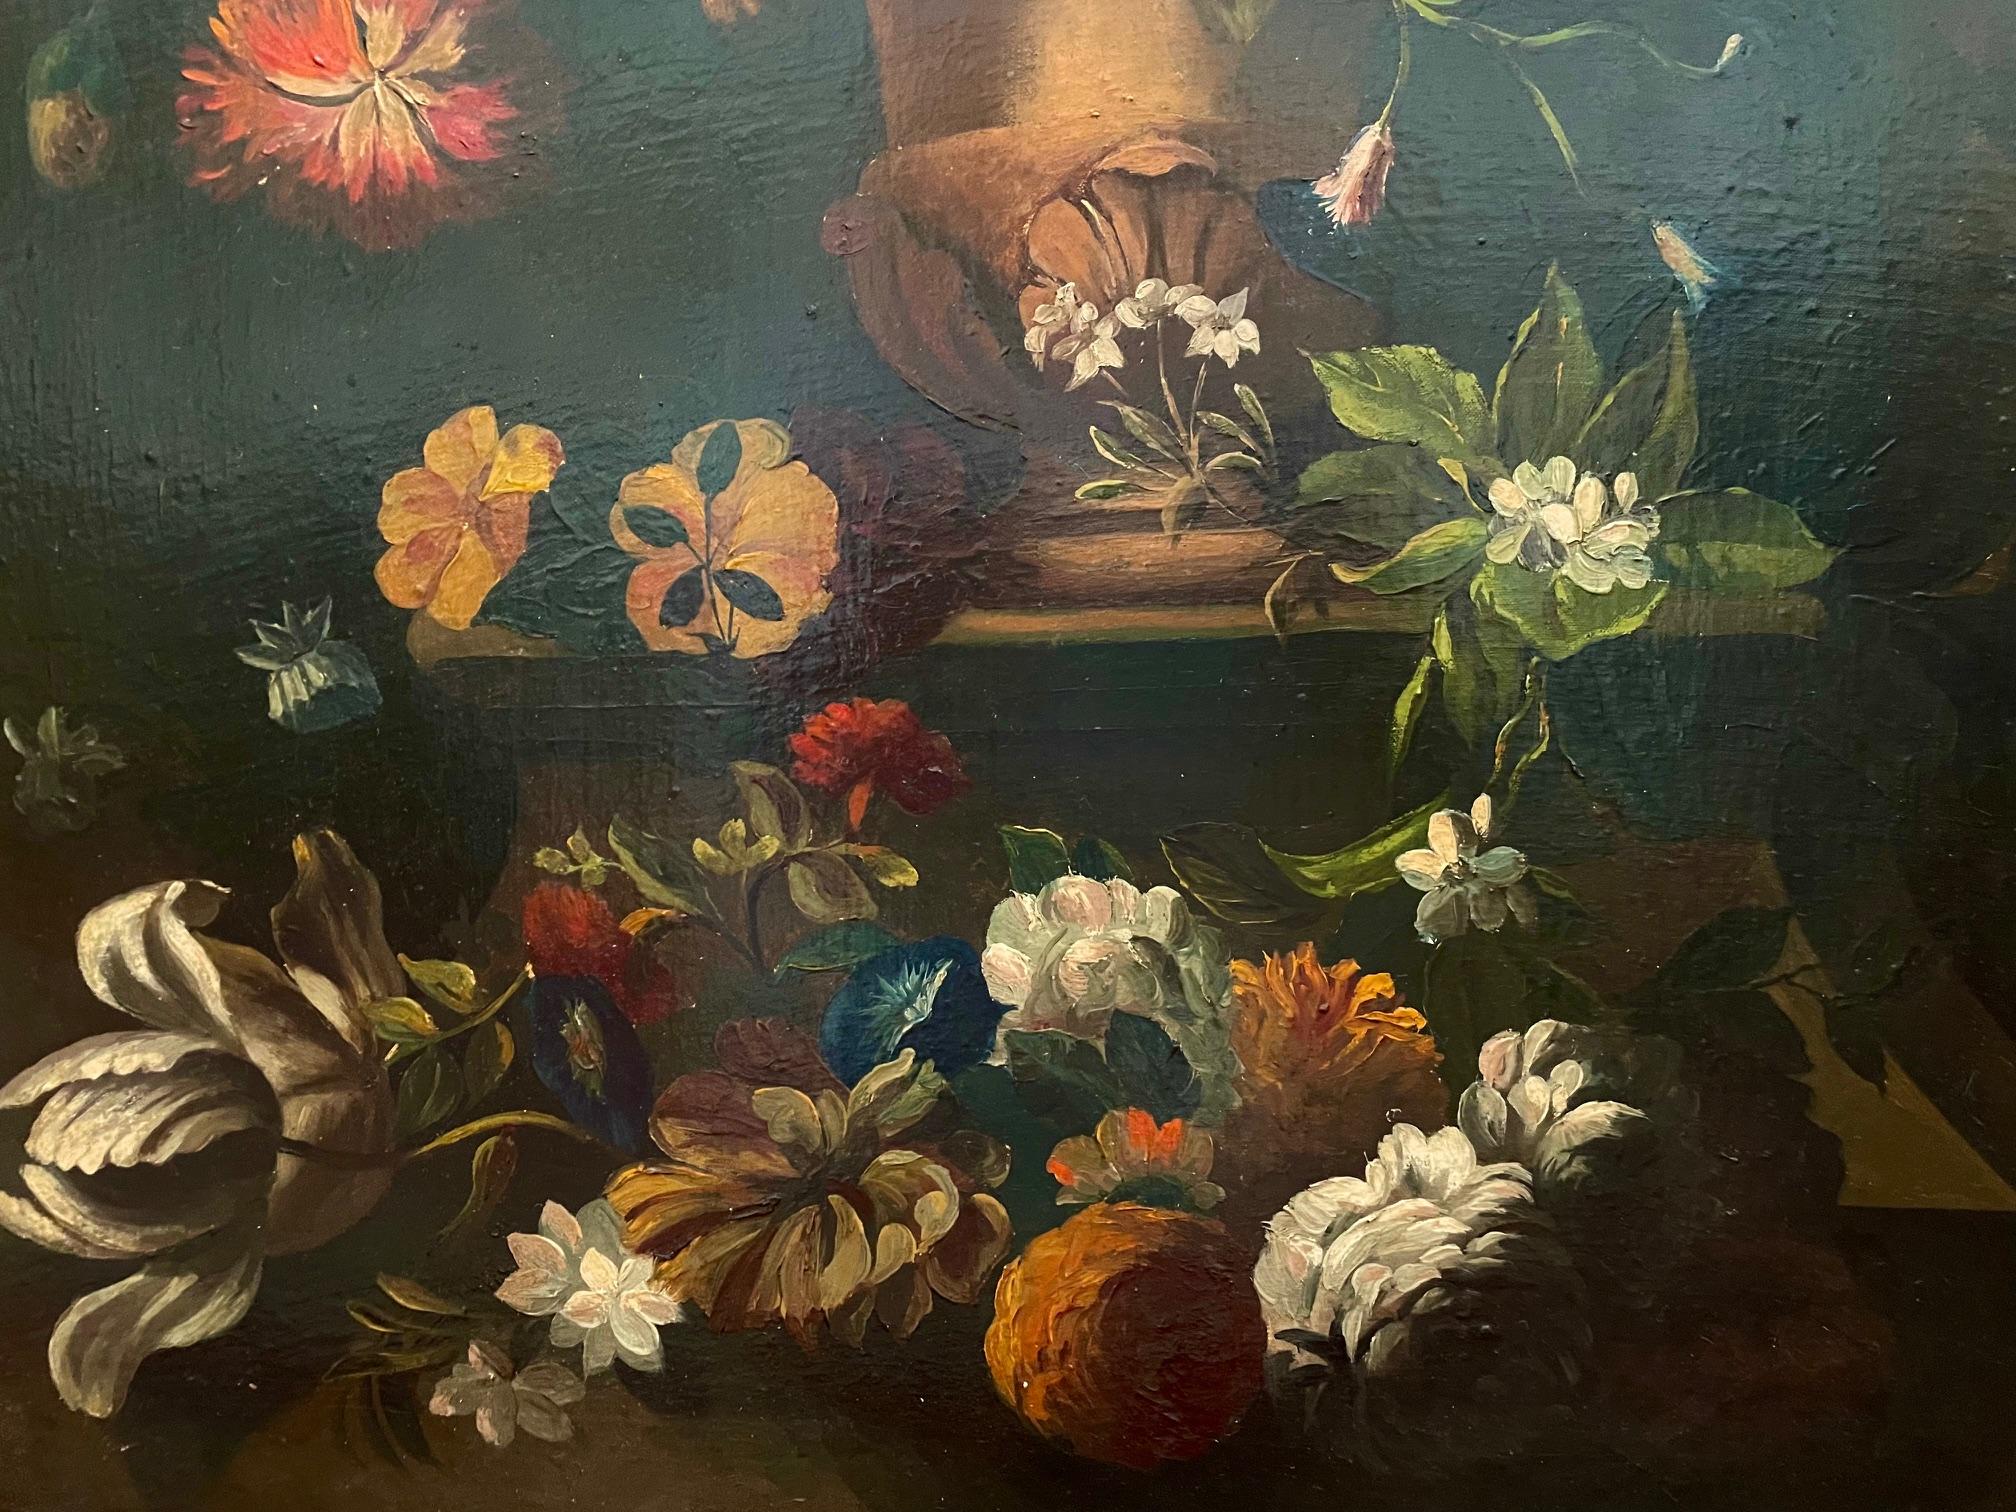 Blumen in klassischer Urne im niederländischen Stil des 17. Jahrhunderts, Alte Meister – Painting von Unknown